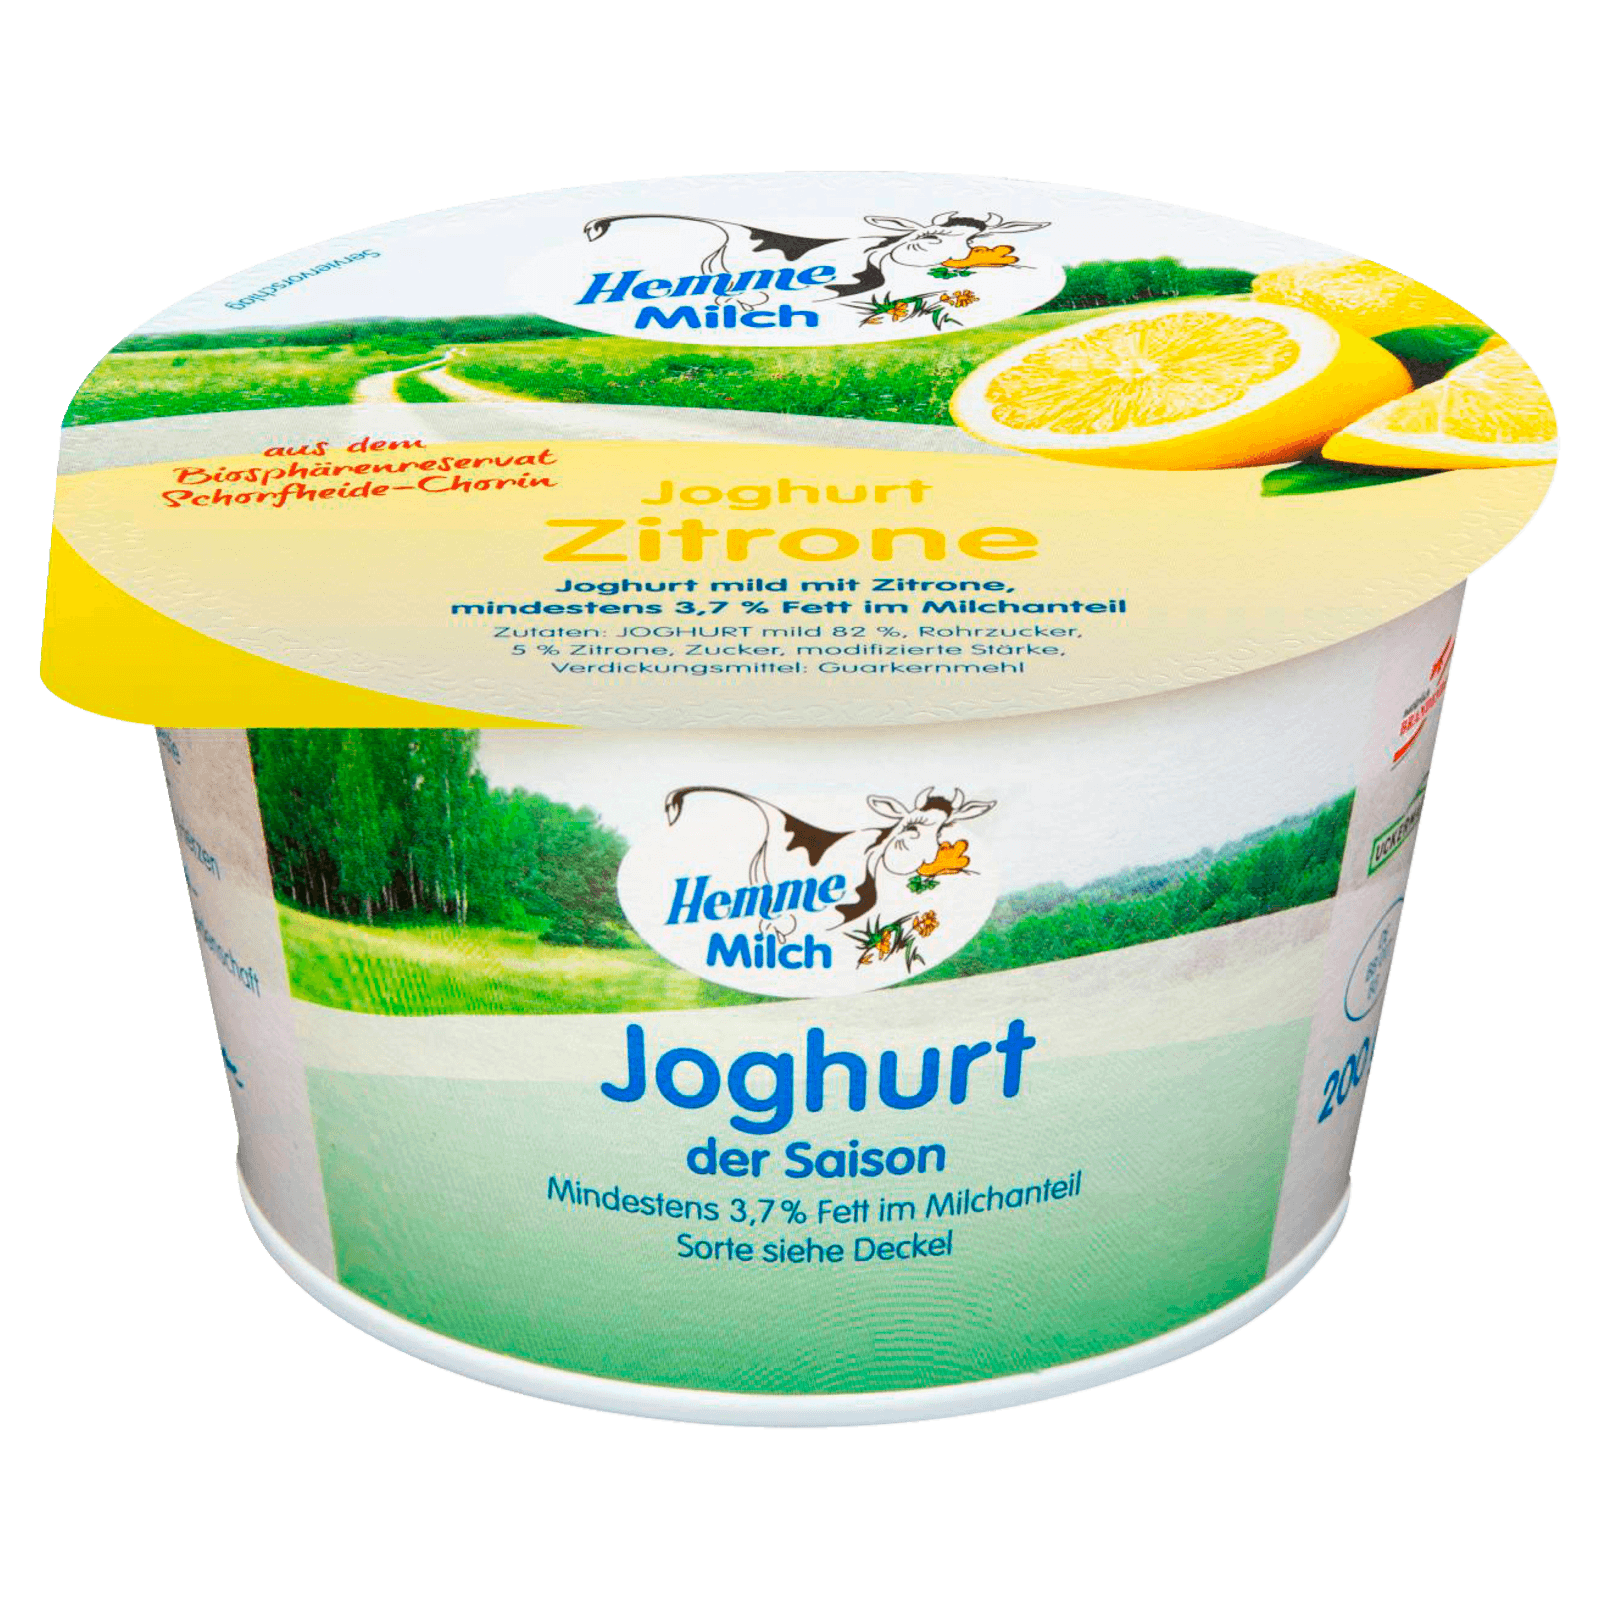 Hemme Milch Joghurt der Saison Zitrone 200g  für 0.79 EUR